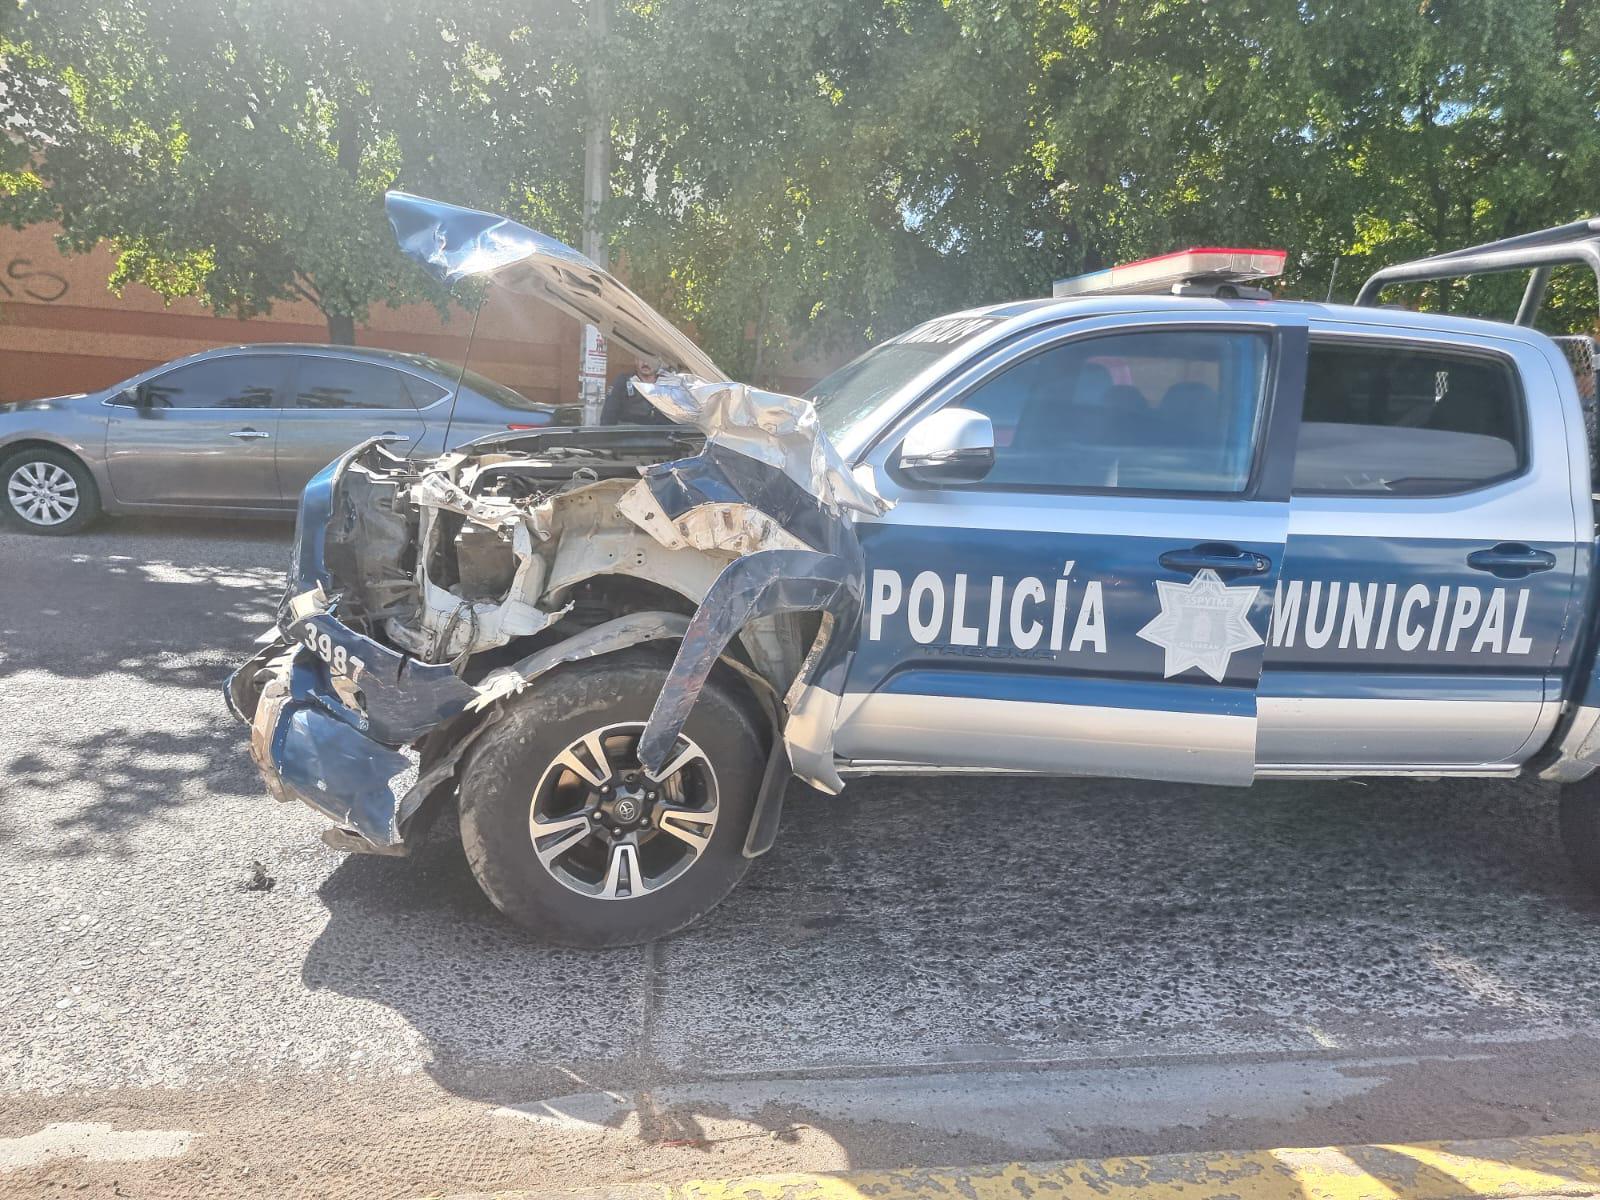 $!Policía de Culiacán choca contra una camioneta